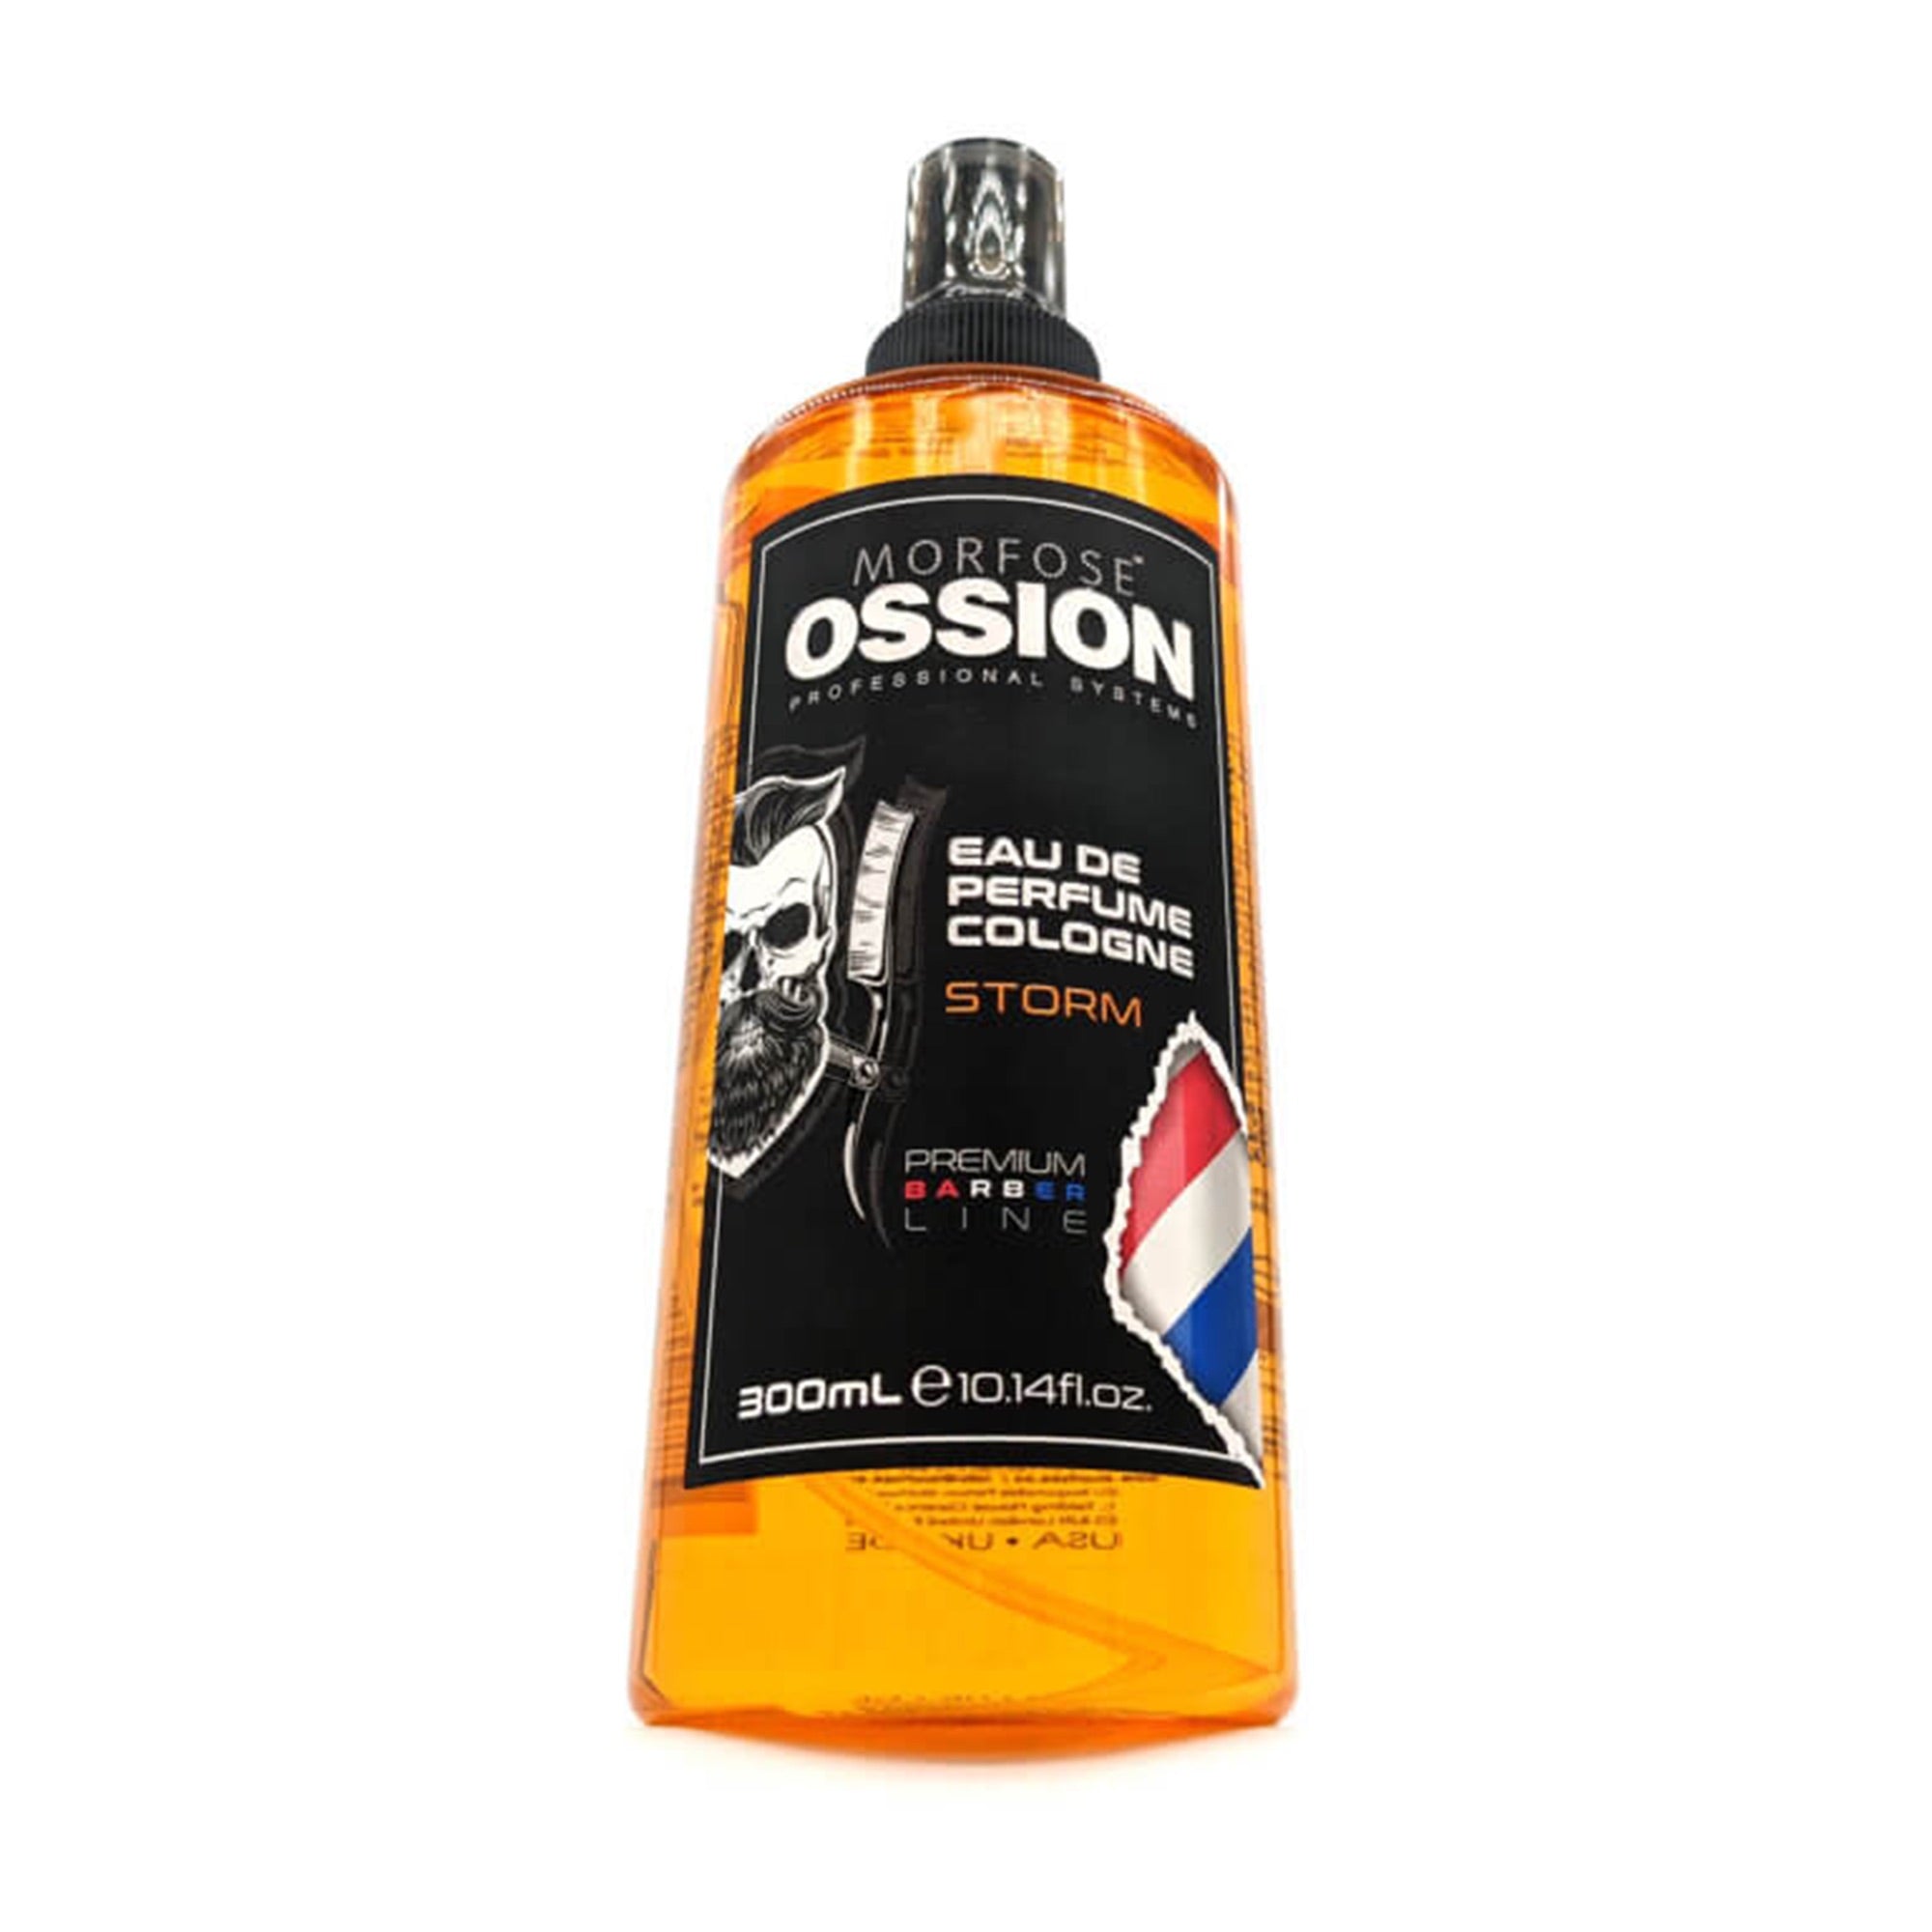 Morfose - Ossion Eau De Perfume Cologne Storm 300ml